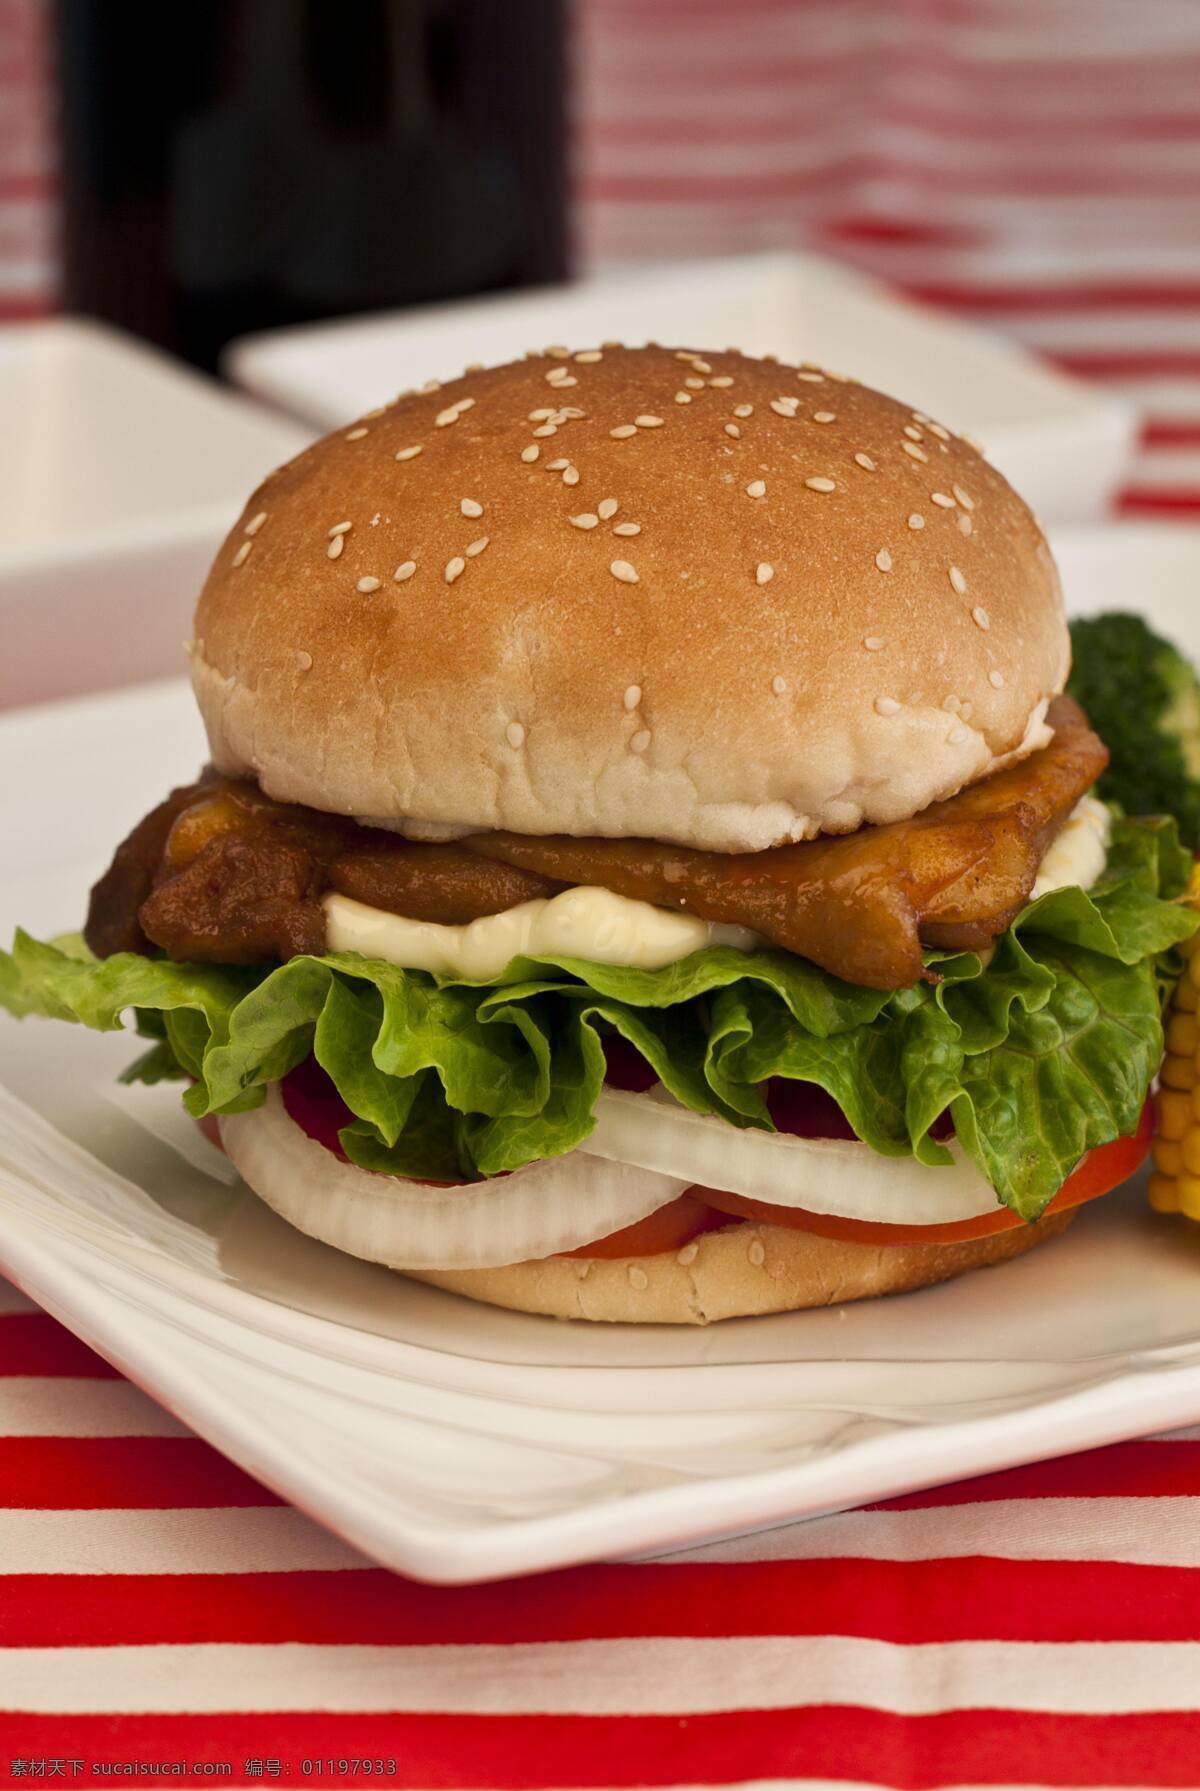 奥尔良鸡腿堡 汉堡 快餐 套餐 方便美食 美味 食品 餐饮 饮食 套餐系列 传统美食 餐饮美食